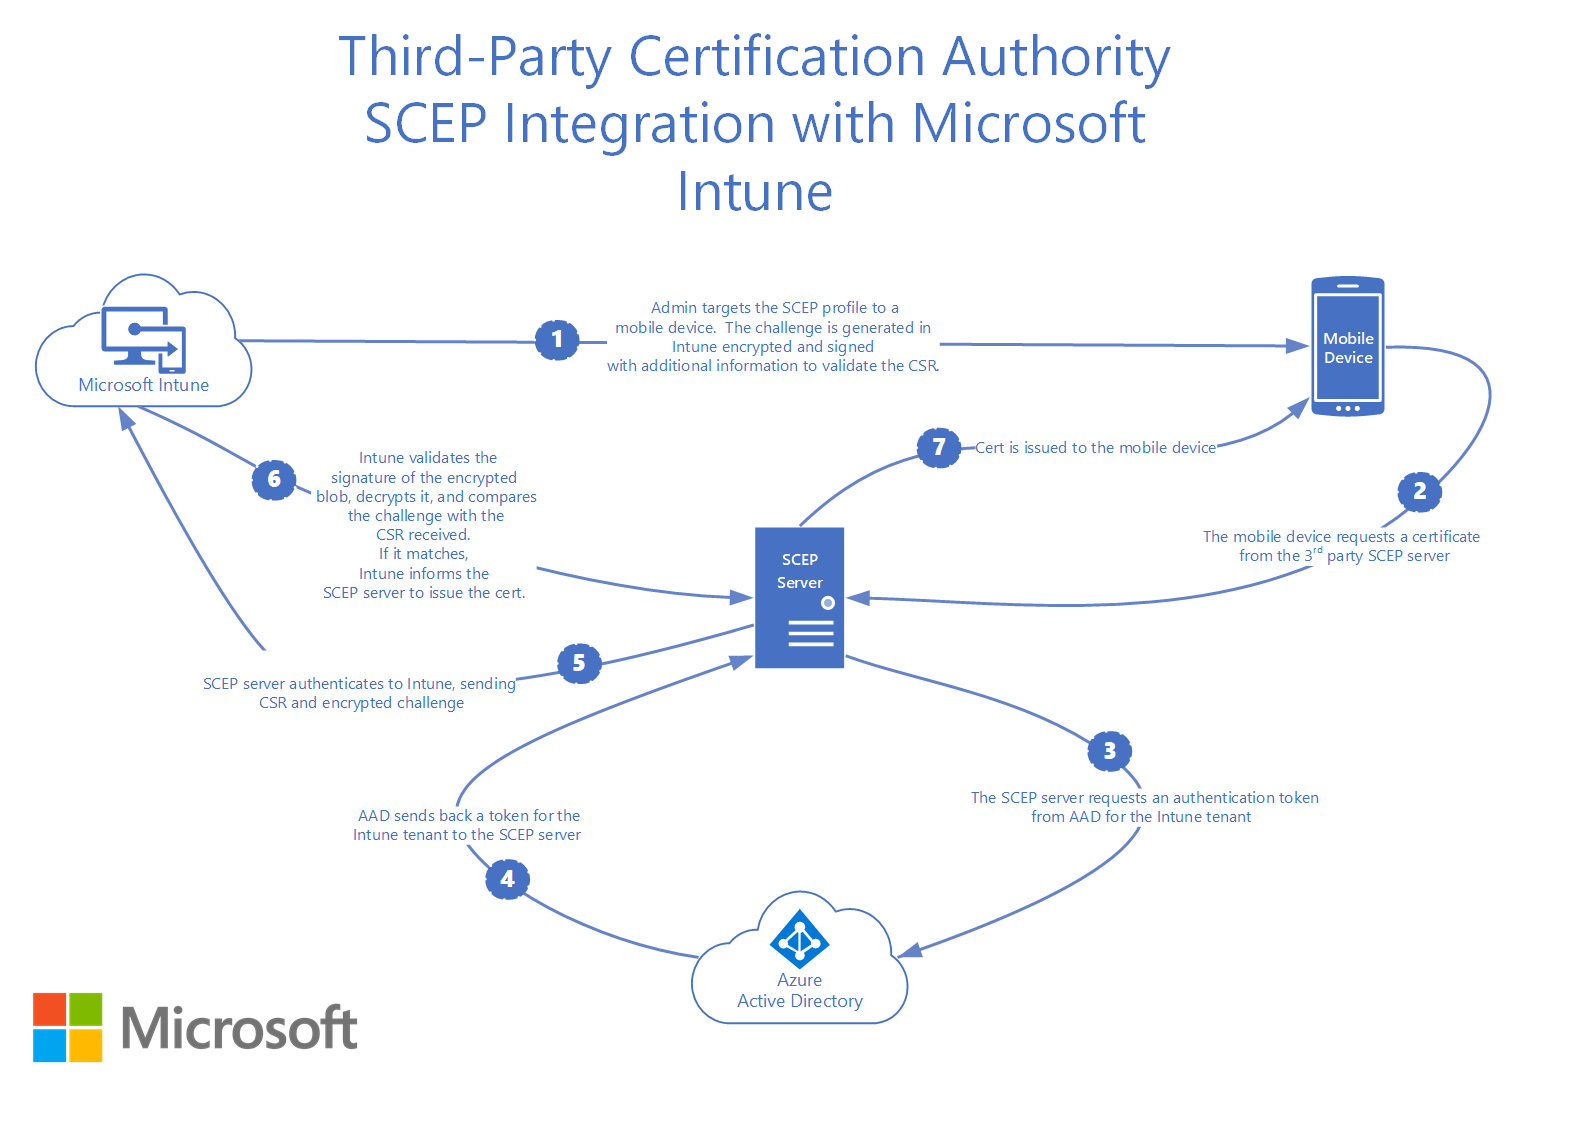 Como é que o SCEP da autoridade de certificação de terceiros se integra com o Microsoft Intune